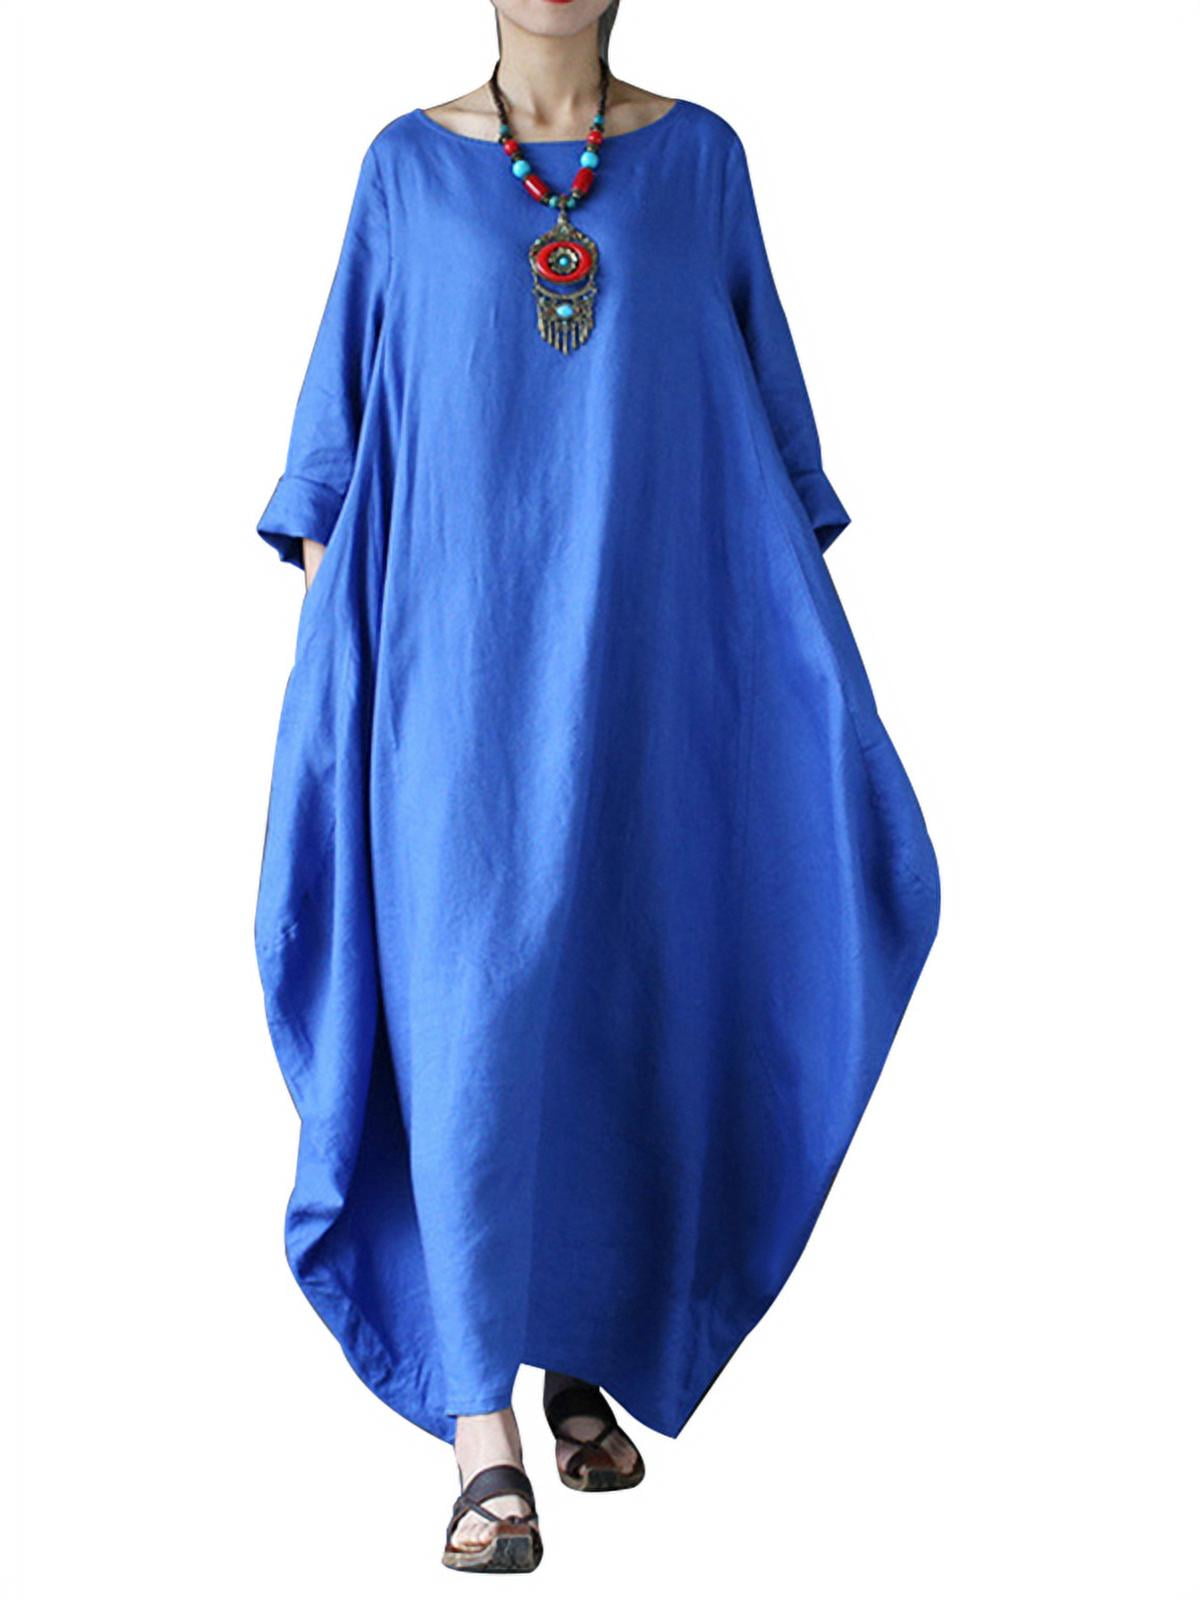 ZANZEA Womens Long Sleeve Casual Long Shirt Dresses - Walmart.com